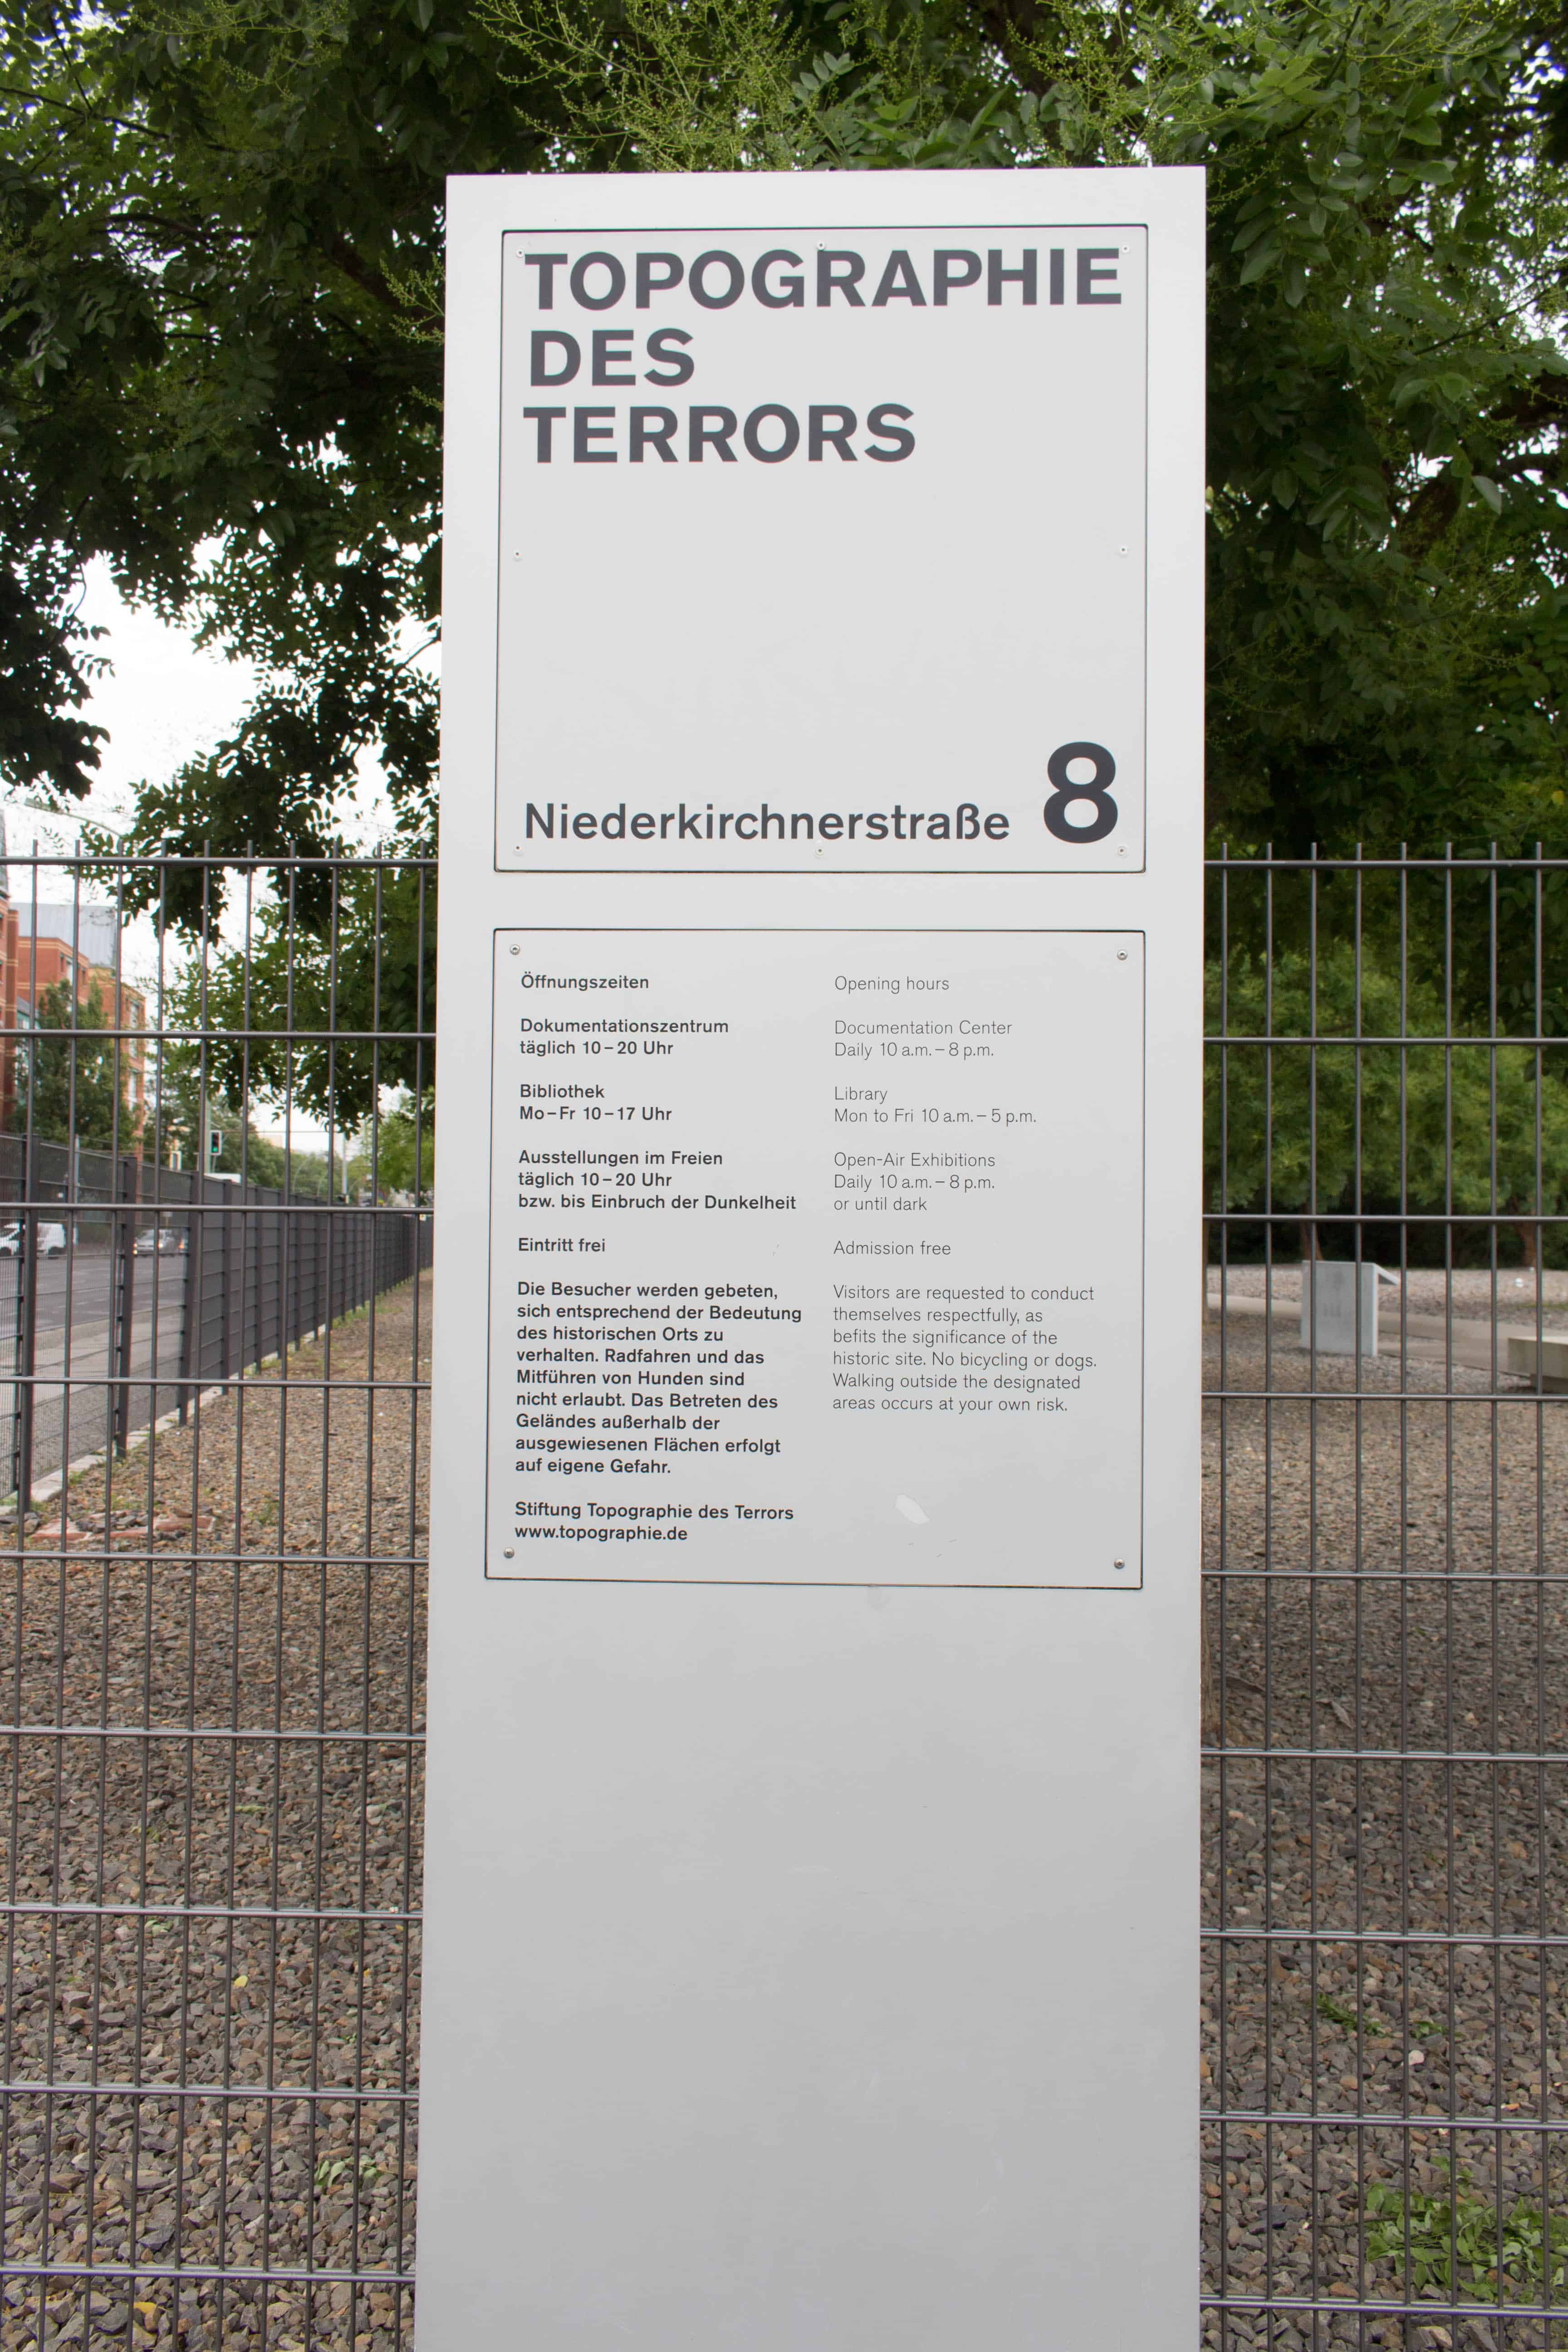 Topography of Terror berlin